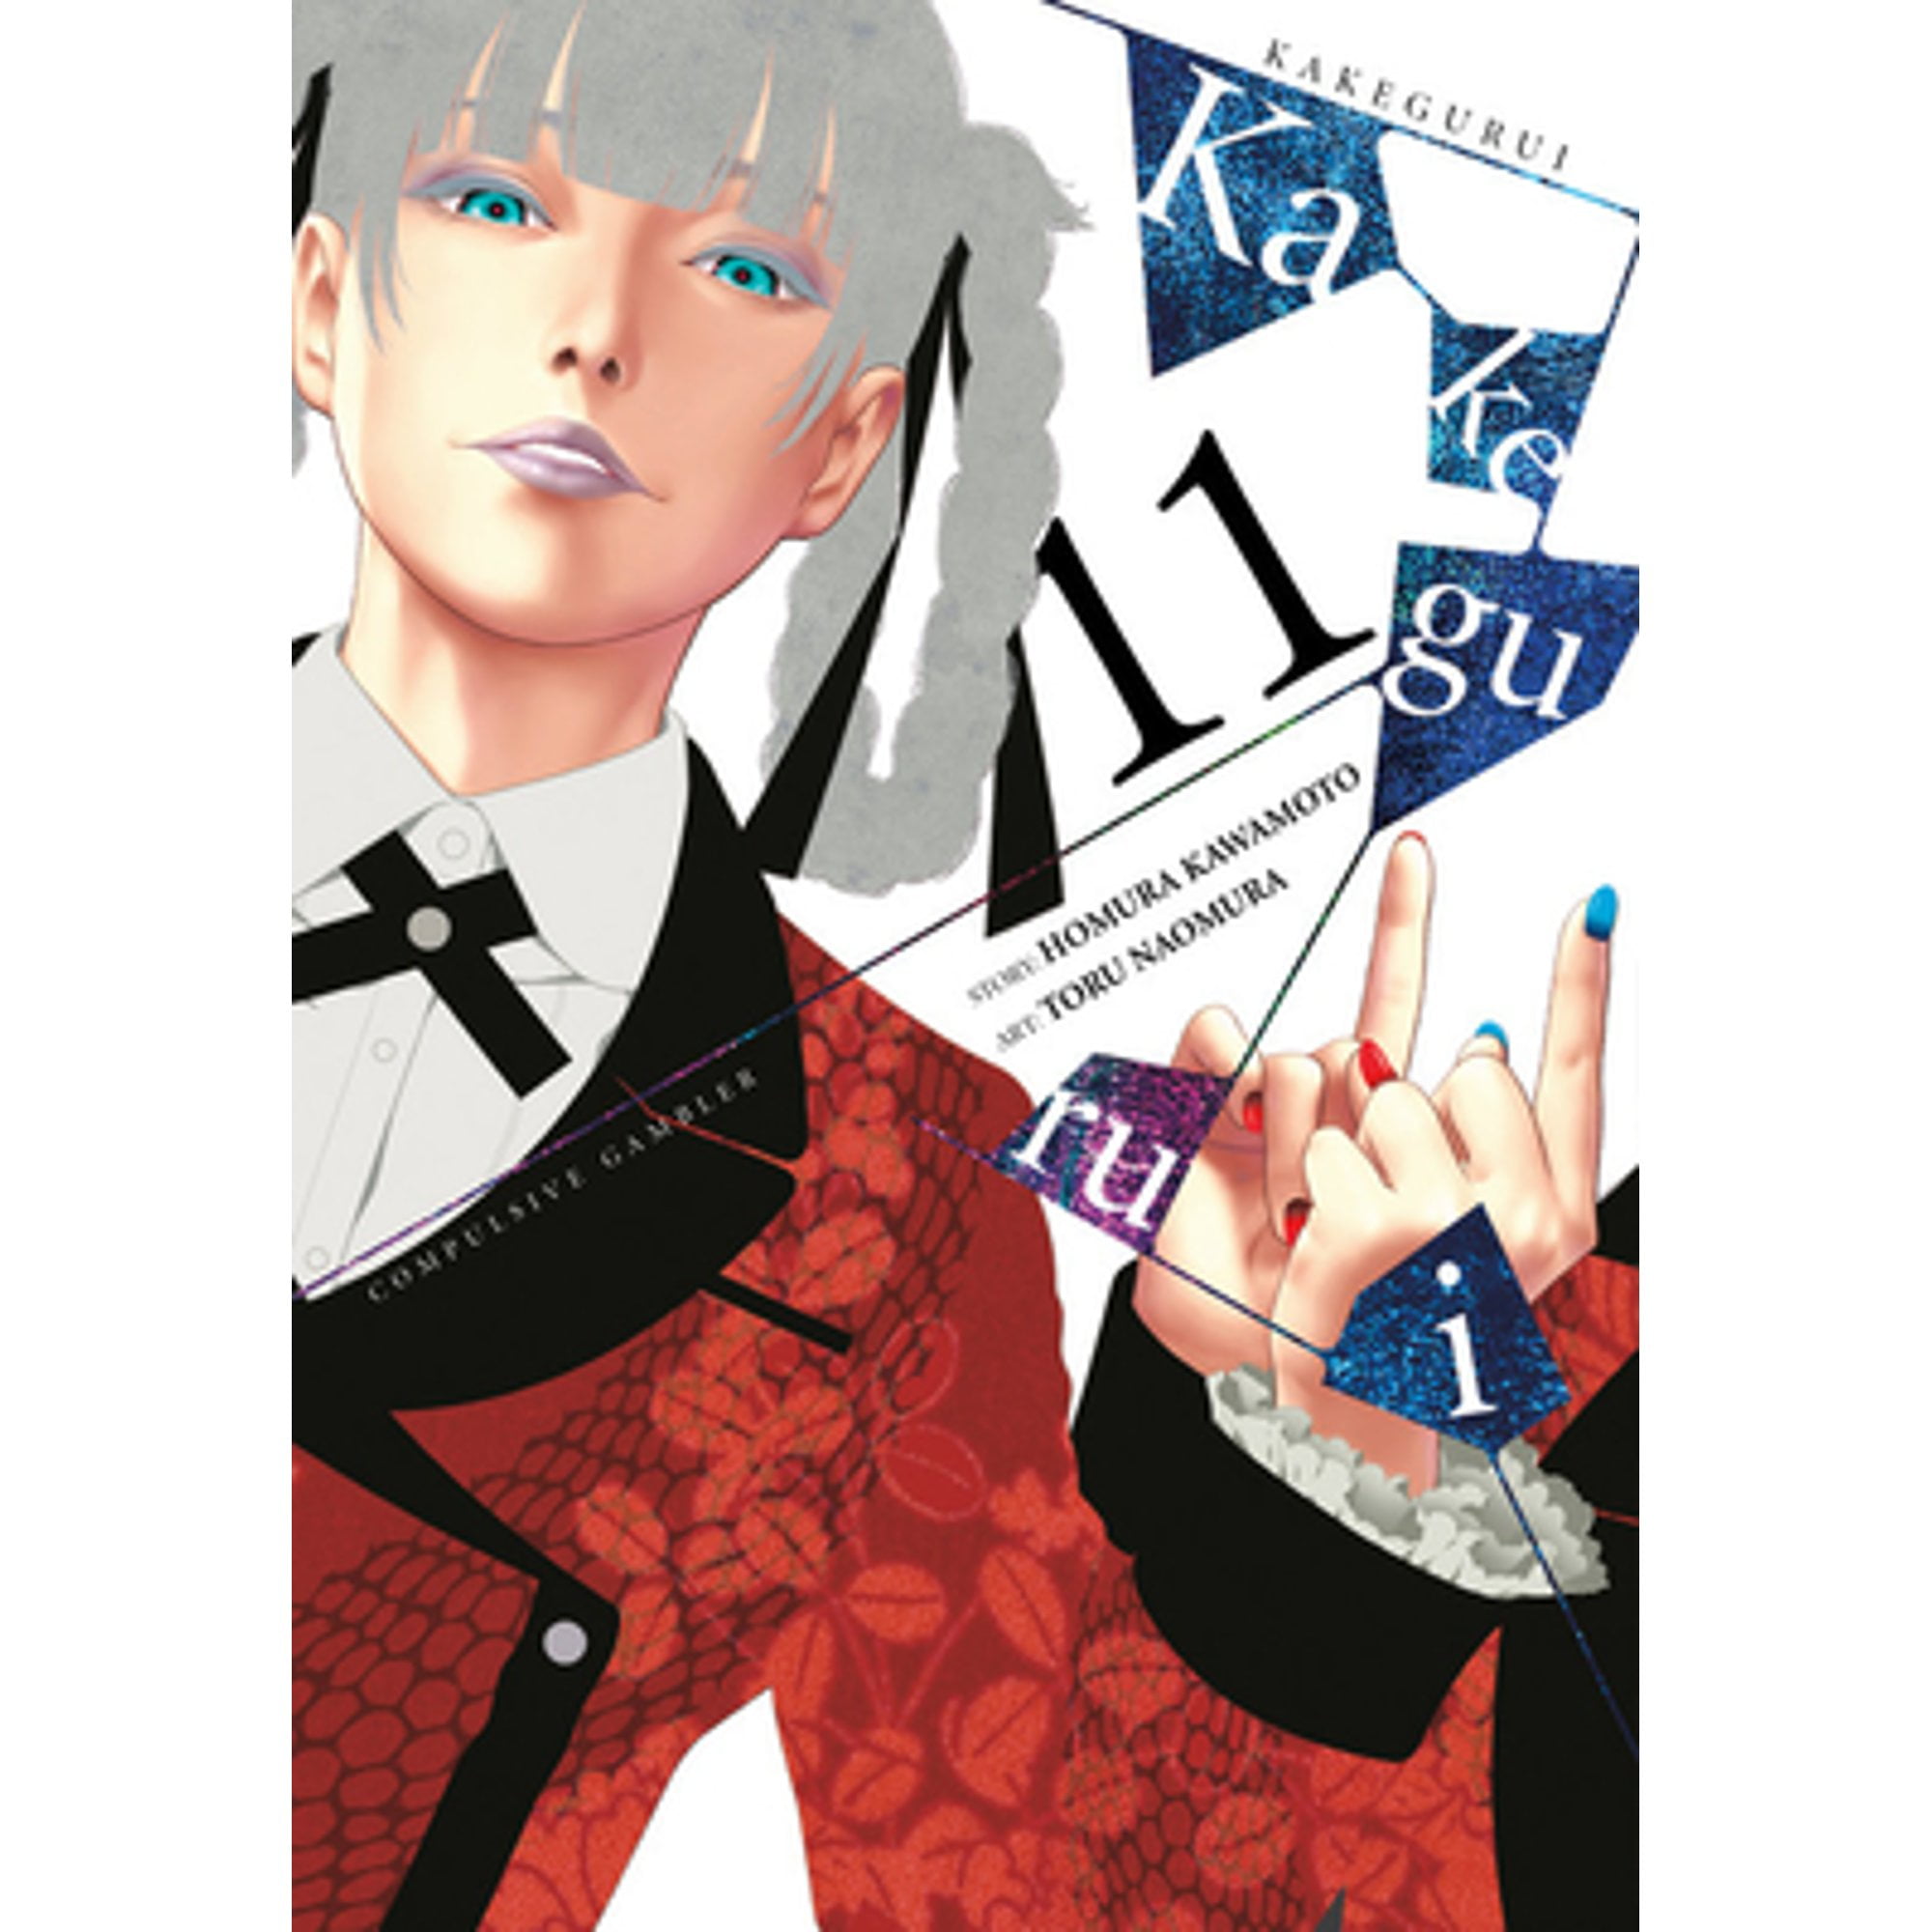 Kakegurui: Compulsive Gambler, Vol. 4 by Homura Kawamoto